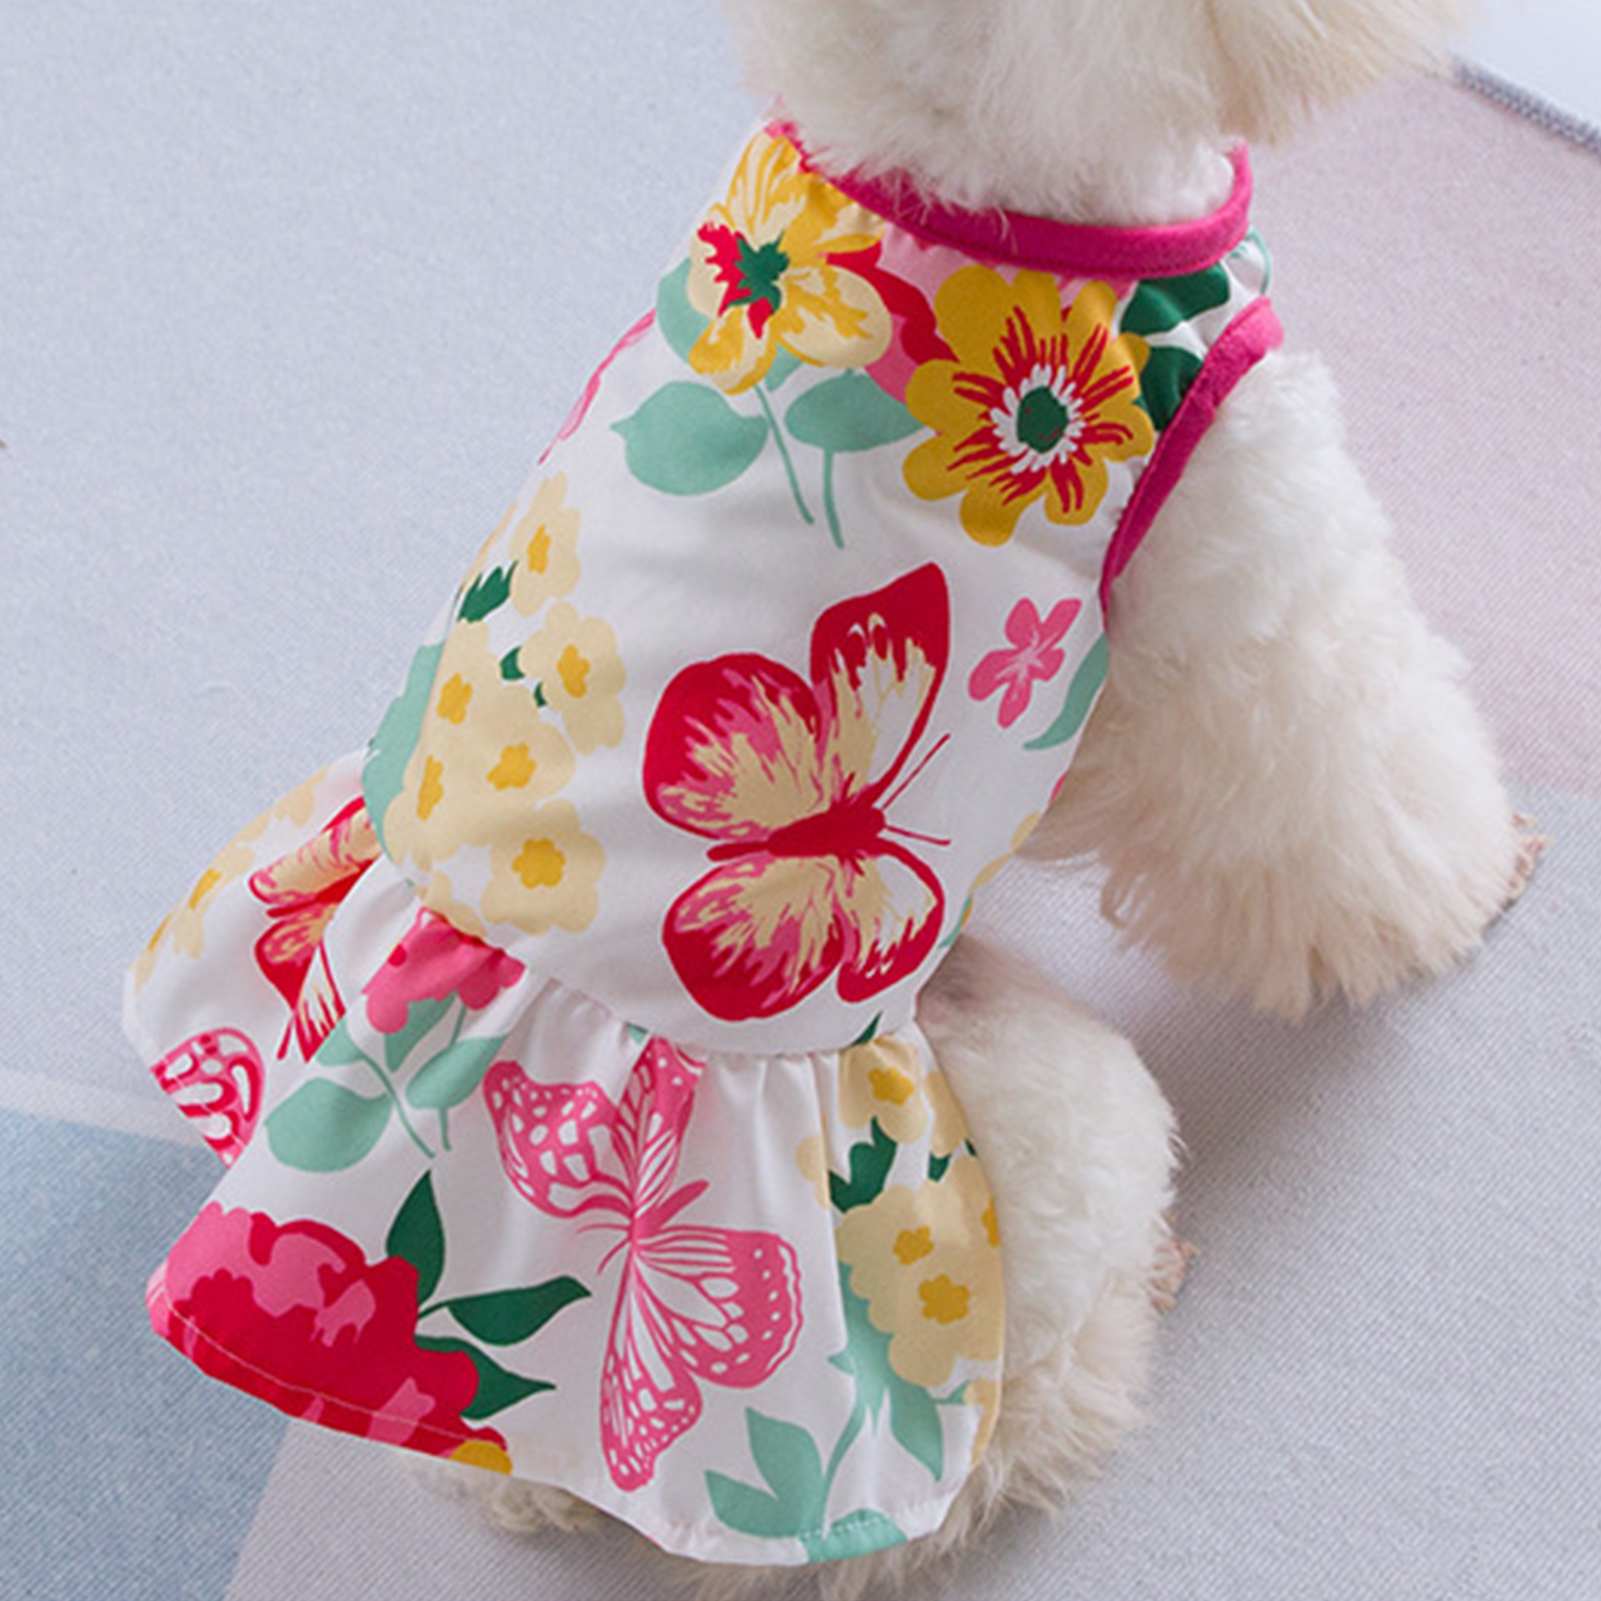 1ชิ้นชุดกระโปรงเจ้าหญิงสำหรับสัตว์เลี้ยงเสื้อผ้าเครื่องแต่งกายพิมพ์ลายดอกไม้สำหรับสุนัขแมว